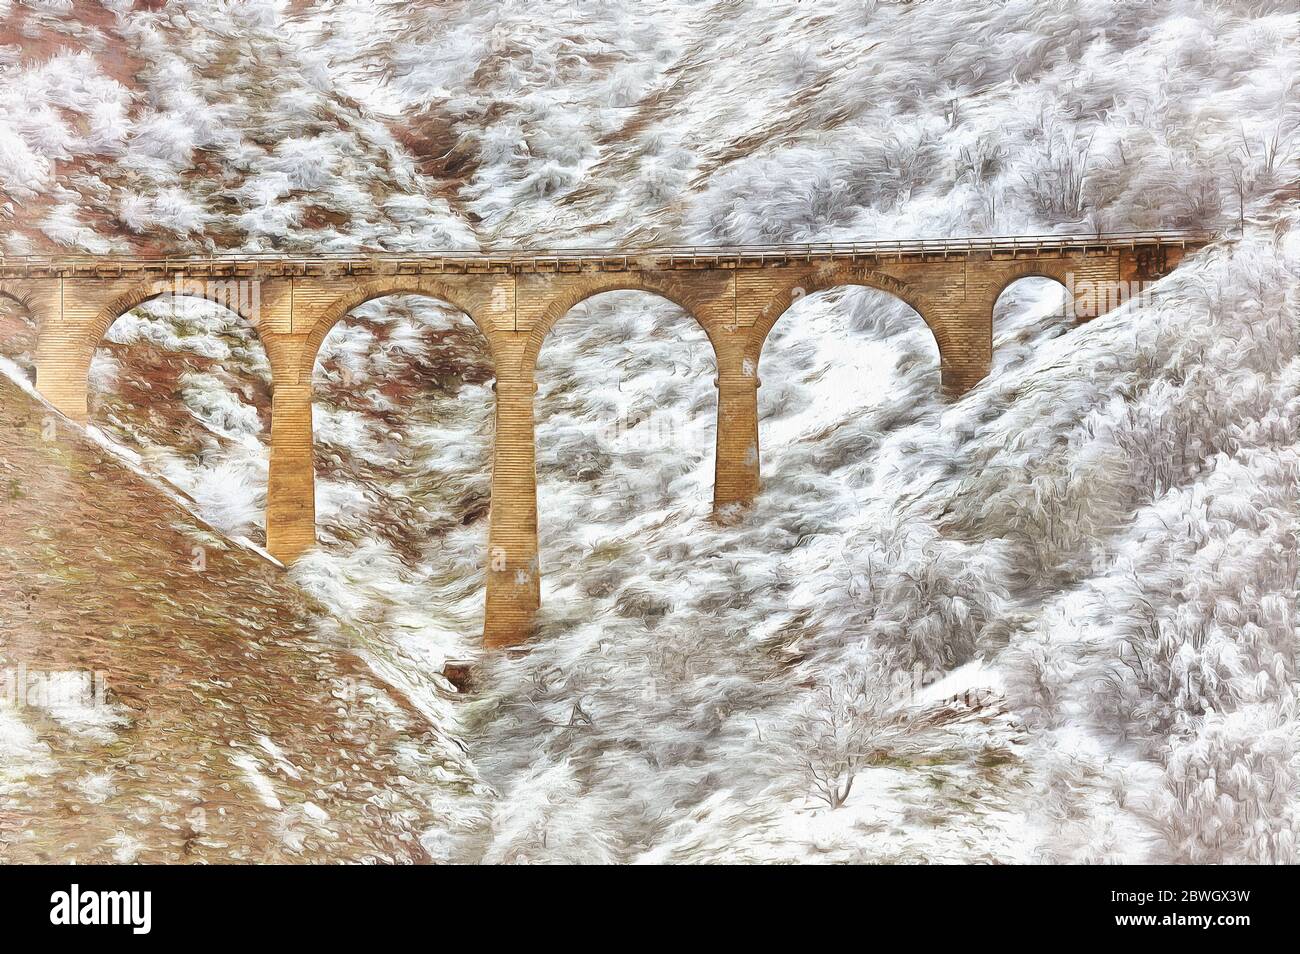 Vieux pont dans les montagnes enneigées peinture colorée, Iran Banque D'Images